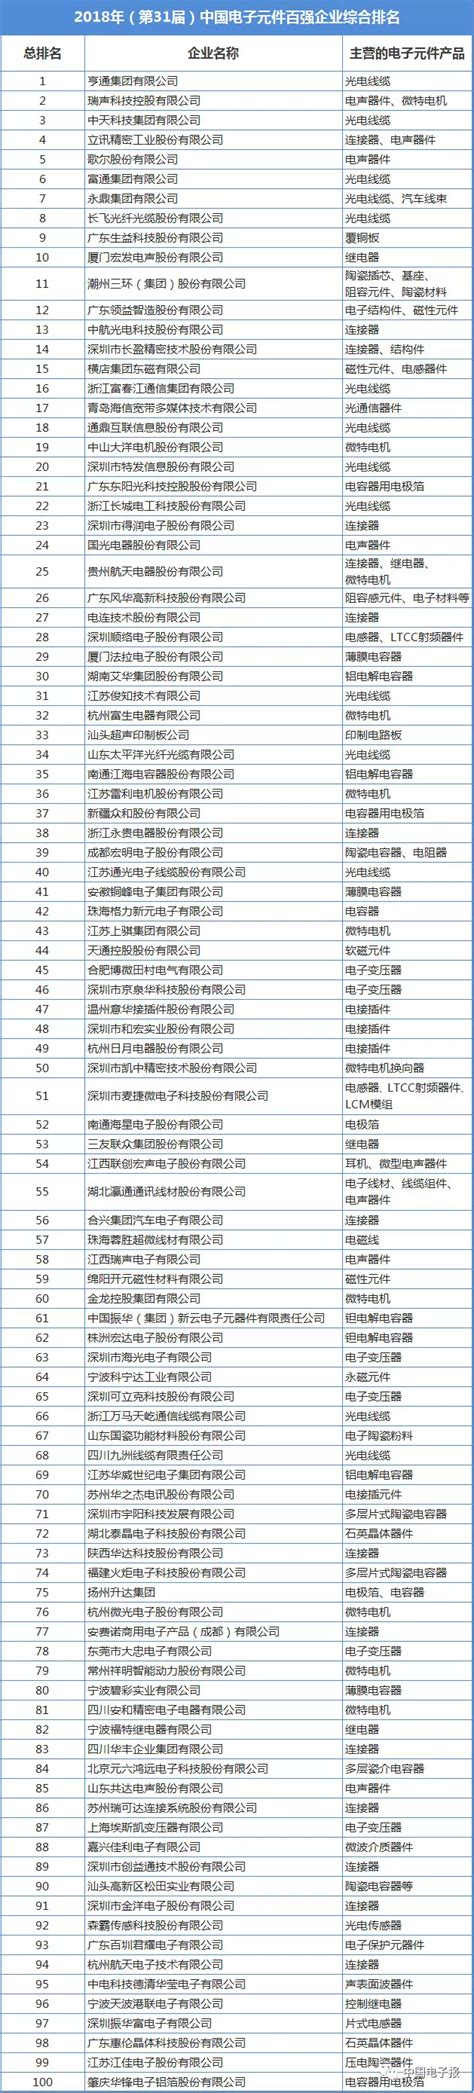 2018年中国电子元件百强企业名单-国际电子商情